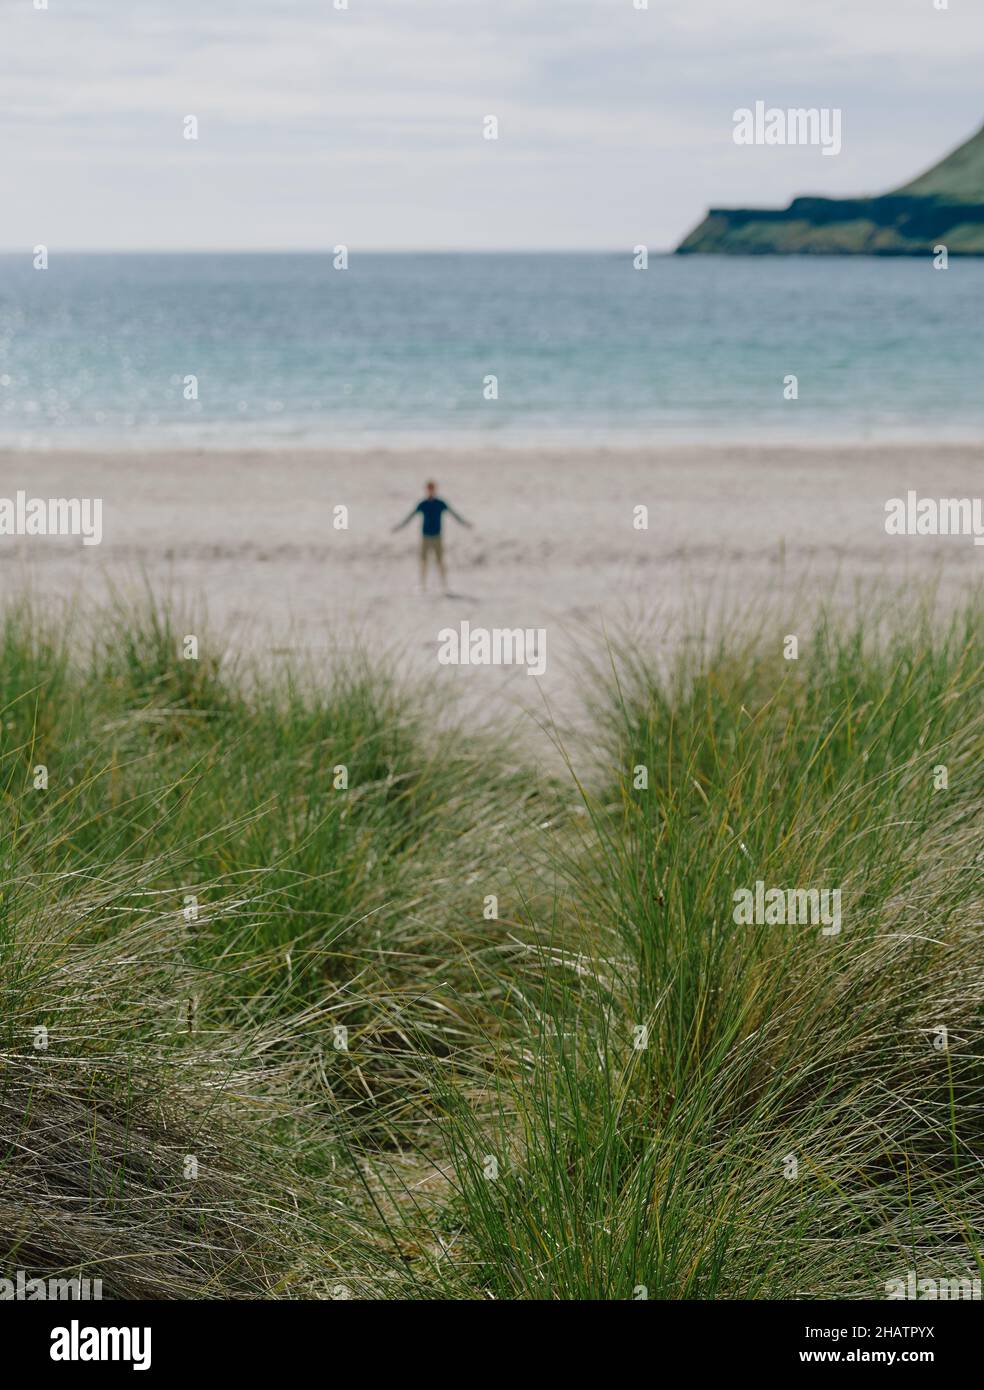 Figura solitaria en una playa escocesa con dunas de arena de hierba Marram y paisaje de verano en la isla de Mull, Inner Hebrides, Escocia Reino Unido - escapada Foto de stock